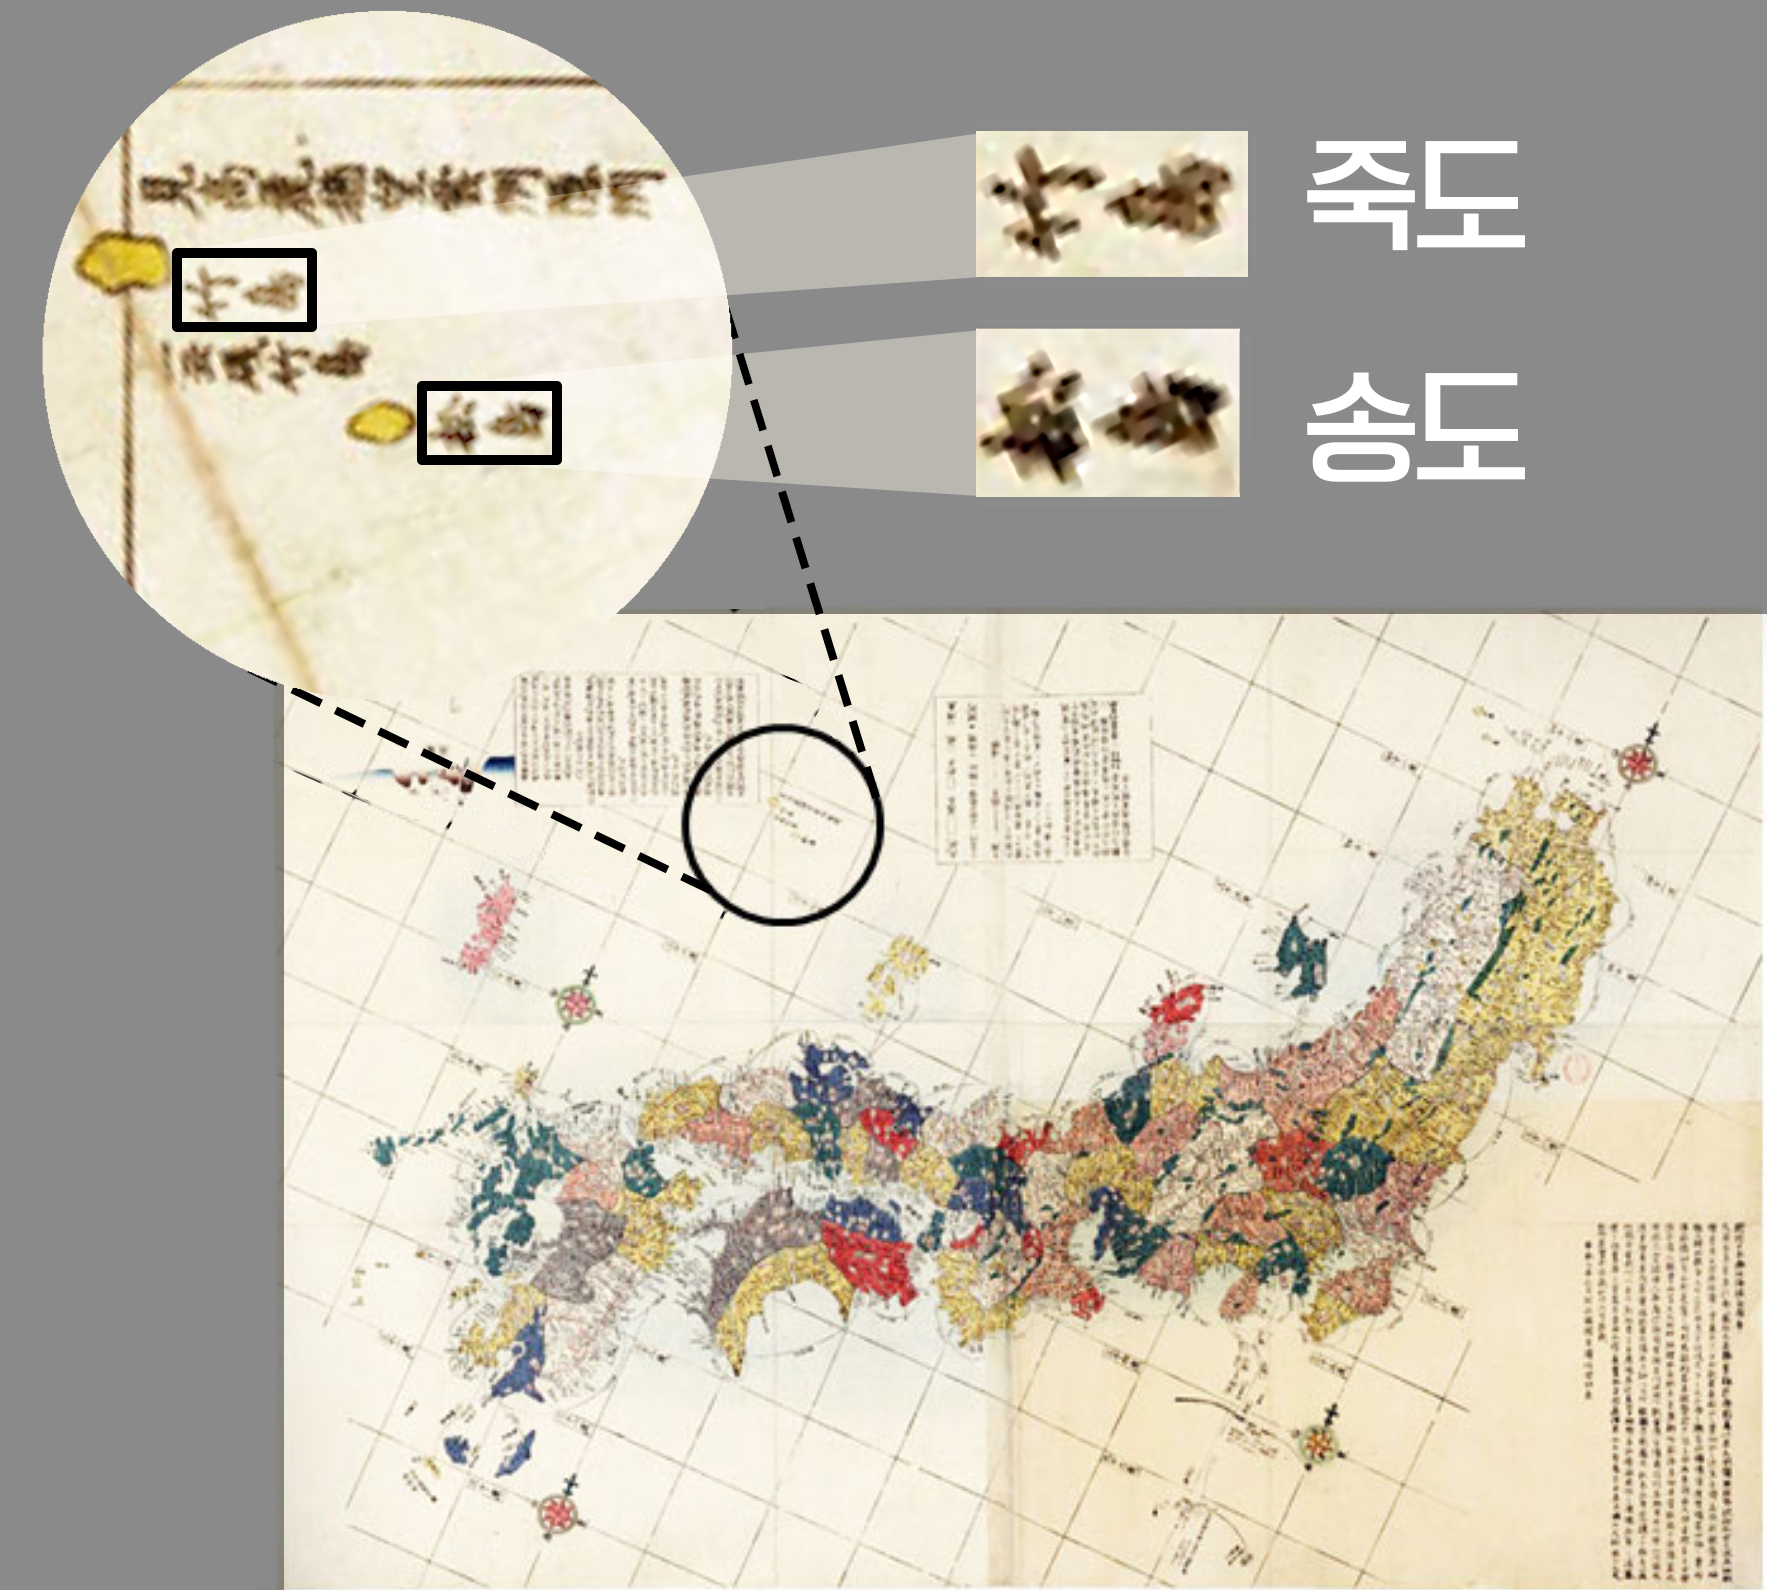 일본 외무성이 홈페이지에  공개한 일본의 고지도(개정일본여지로정전도/改正日本輿地路程全圖/ 1779년 초판).  일본 정부는 과거 18세기에 독도의 위치와 명칭을 인지하고 있었다고 주장했지만, 정작 이 지도에서는 왼쪽(서쪽)에 큰 섬을 죽도(일본명 다케시마)로 표기하고, 오른쪽(동쪽) 작은 섬을 송도(일본명 마쓰시마)로 표기하는 등 현재 명칭과는 다르다는 것이 드러난다. 